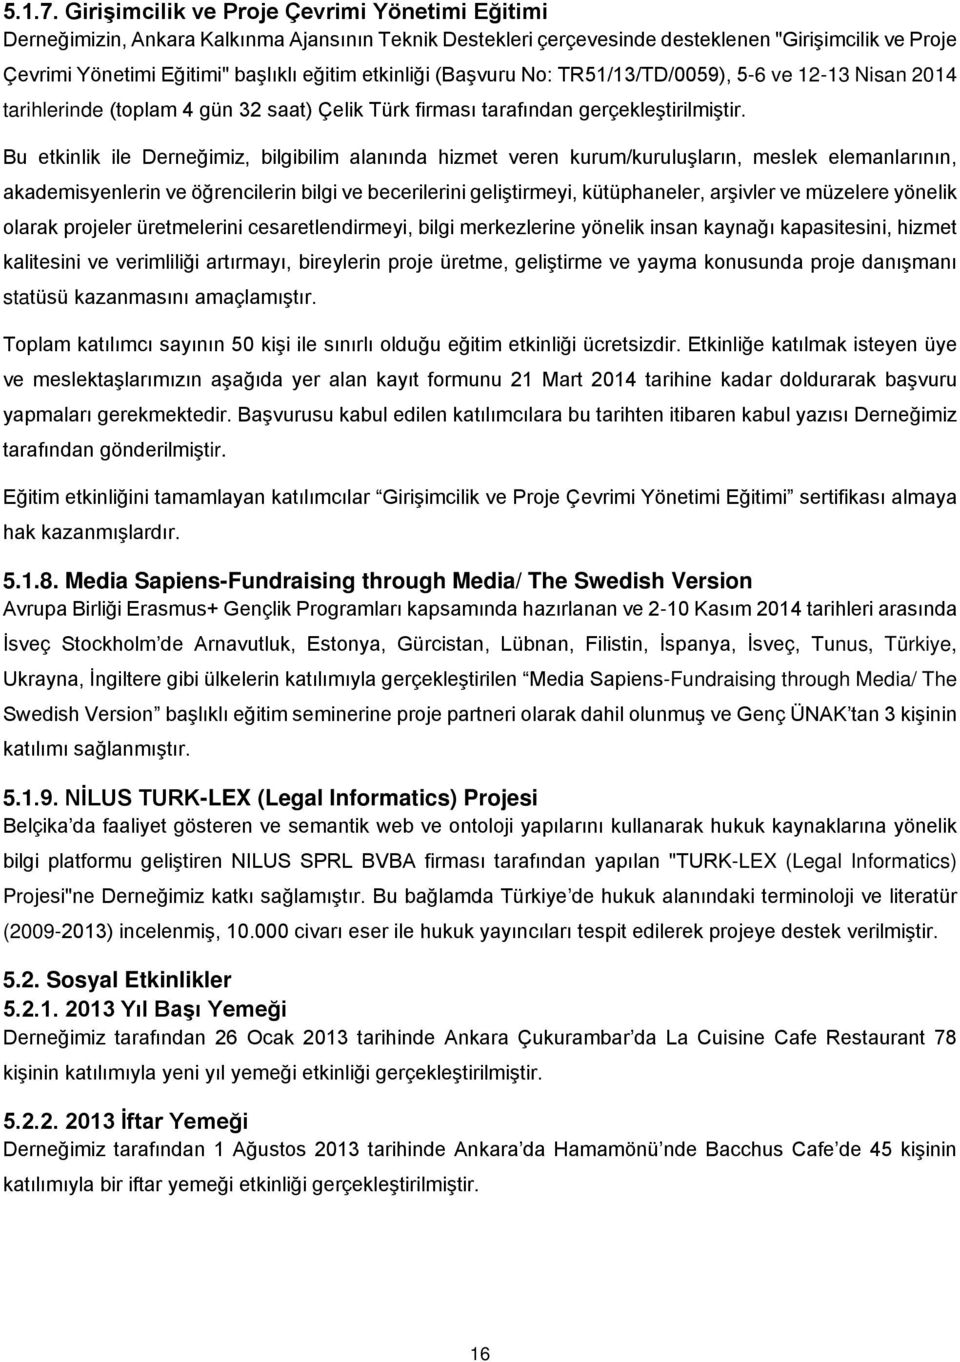 etkinliği (Başvuru No: TR51/13/TD/0059), 5-6 ve 12-13 Nisan 2014 tarihlerinde (toplam 4 gün 32 saat) Çelik Türk firması tarafından gerçekleştirilmiştir.